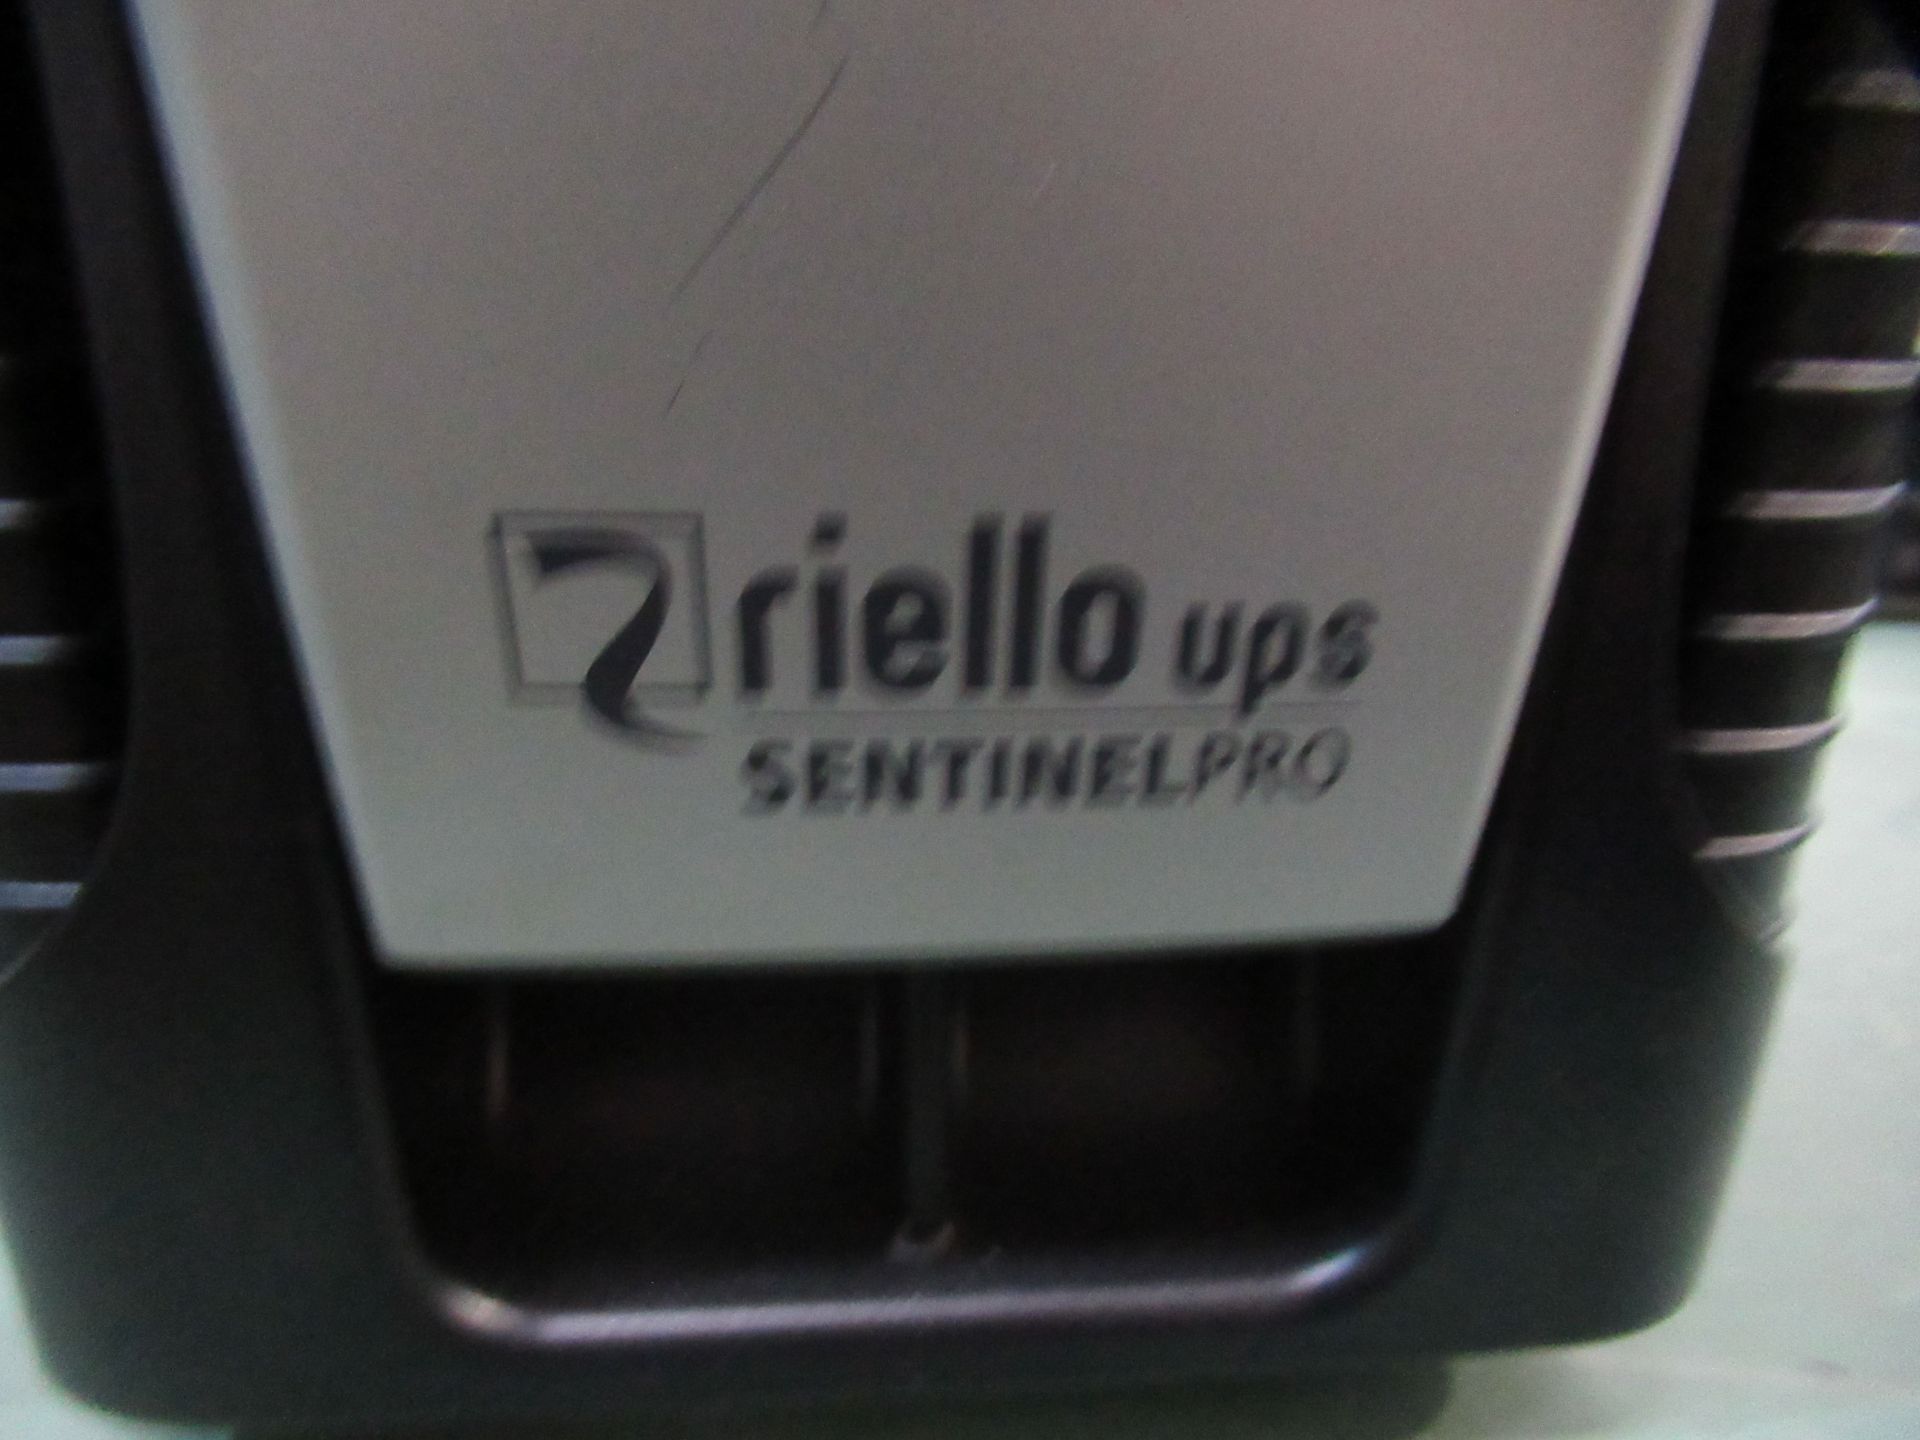 Riello UPS Sentinel Pro - Image 2 of 2